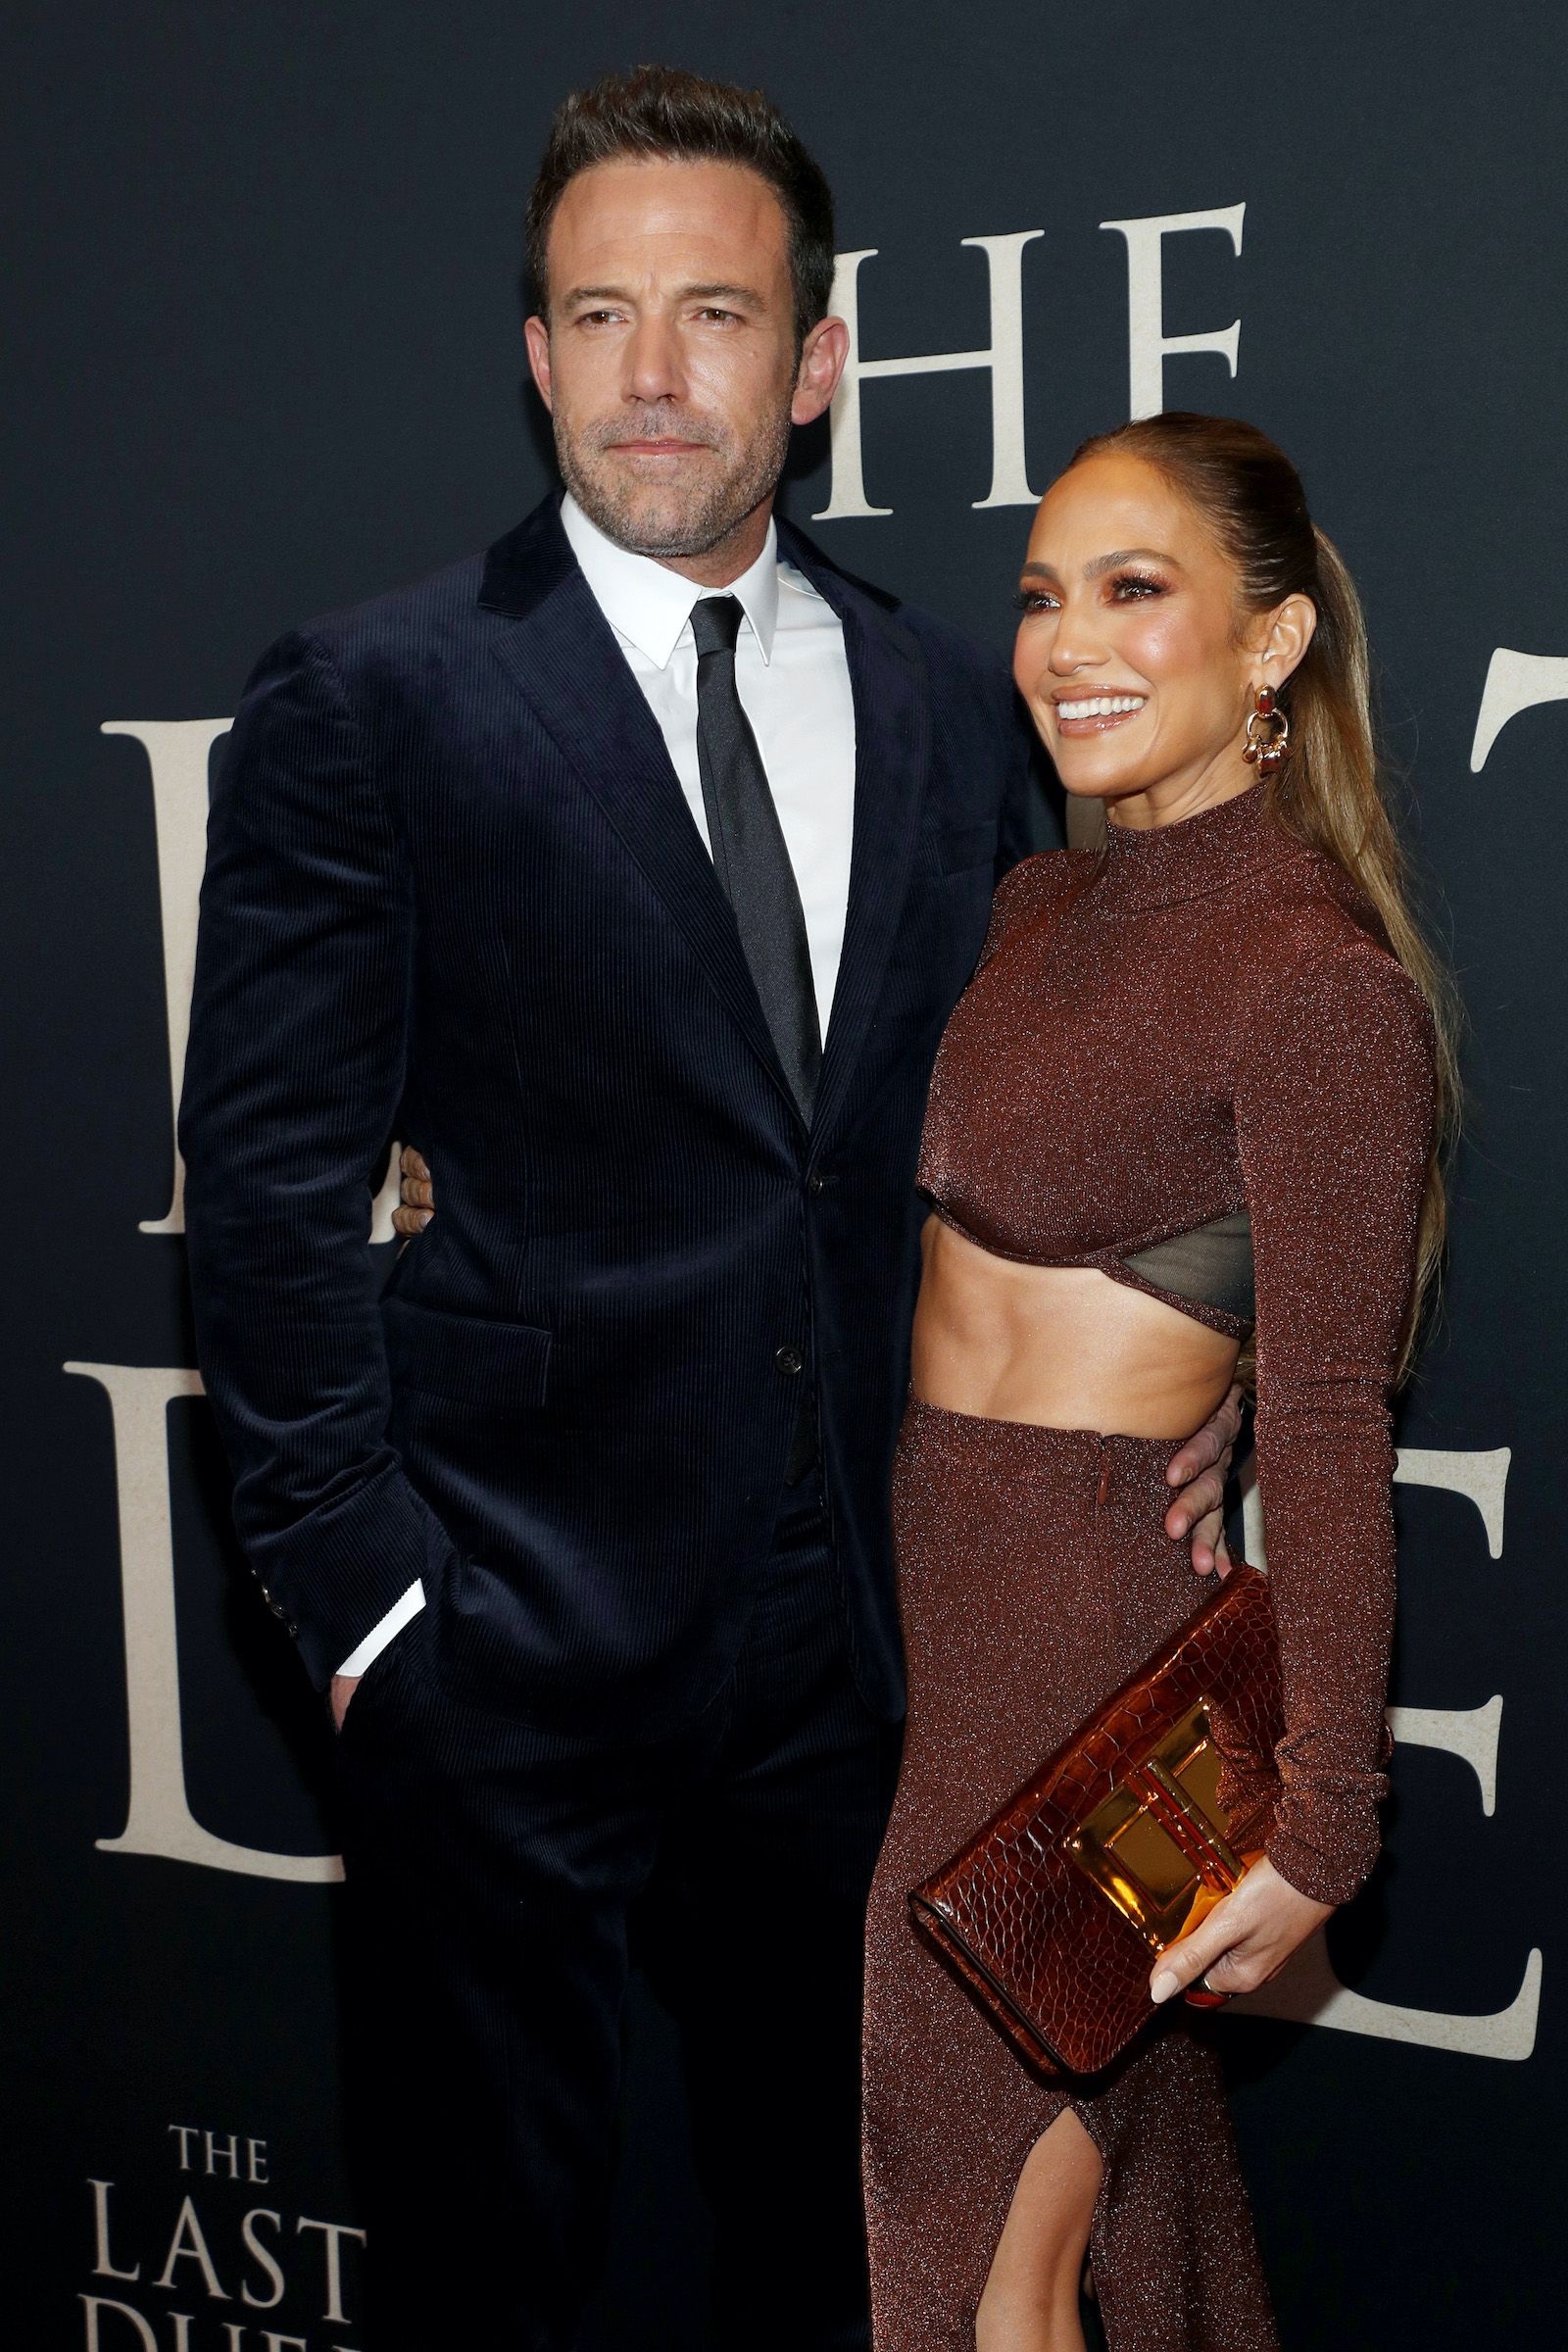 Jennifer Lopez and Ben Affleck Wallpapers (19+ images inside)